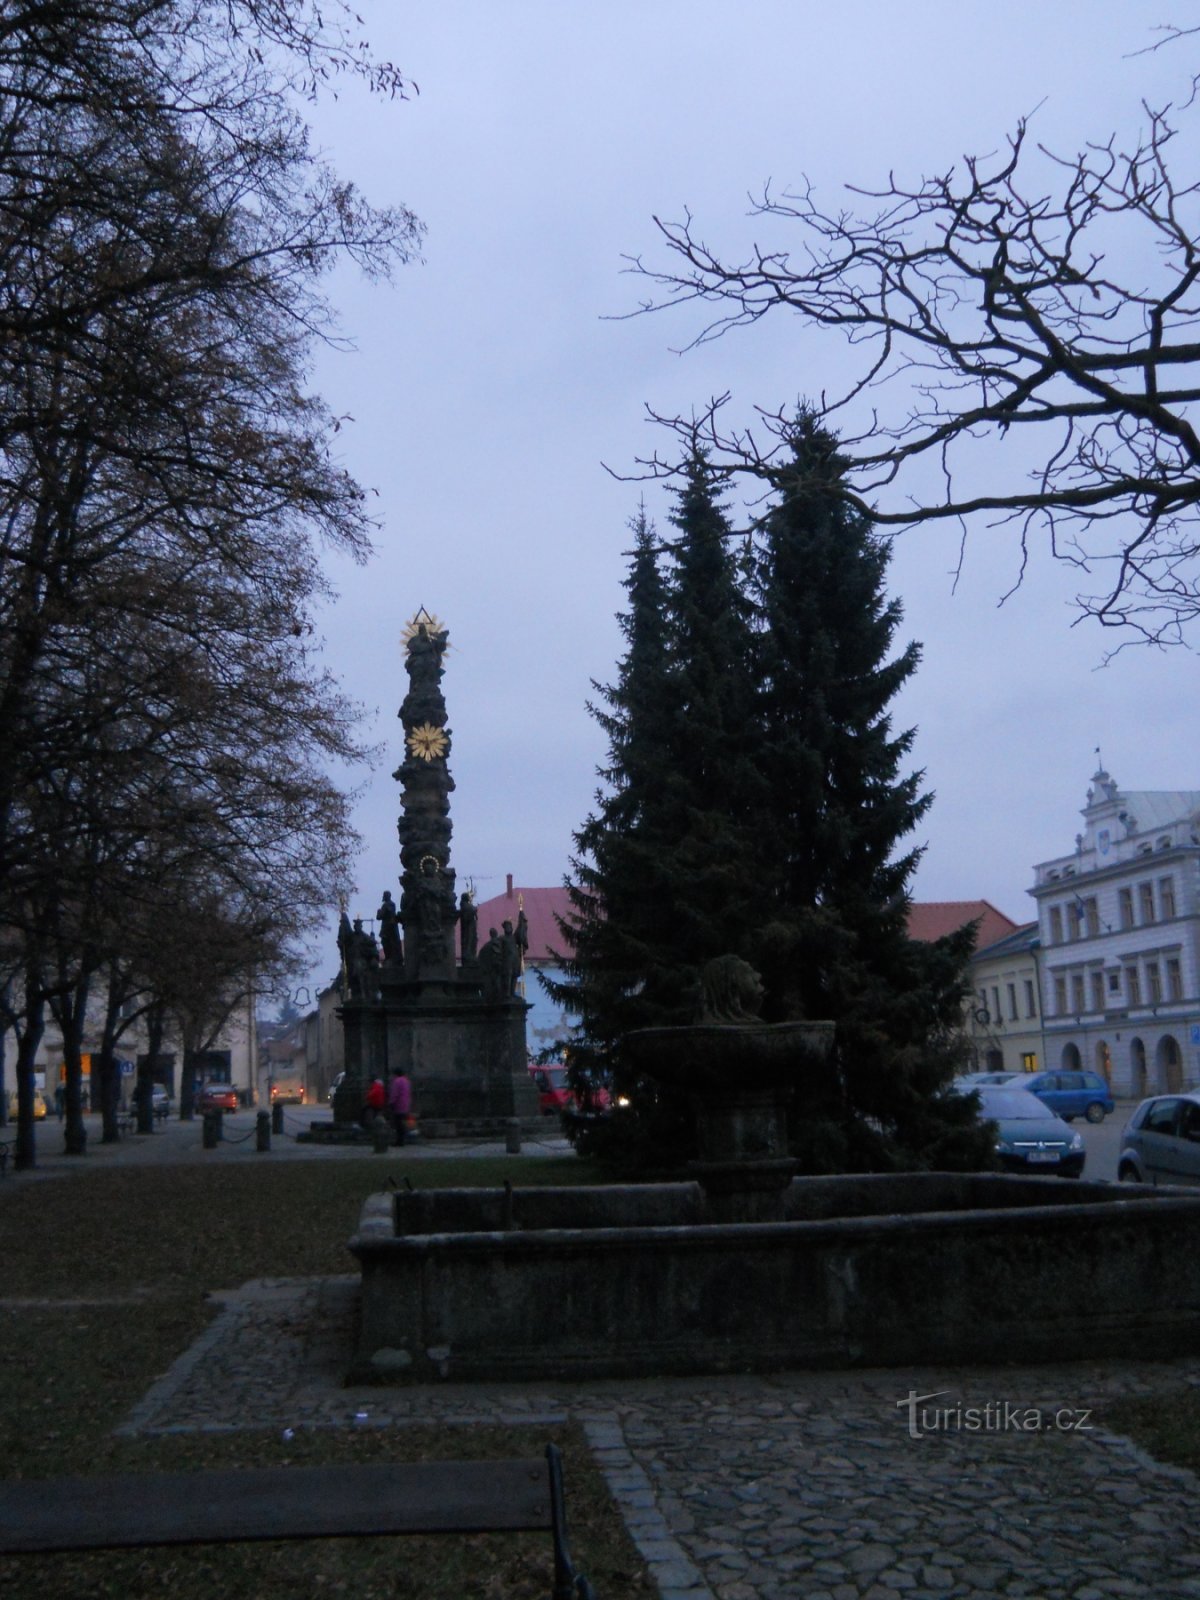 Husovo náměstí - plague column with fountain